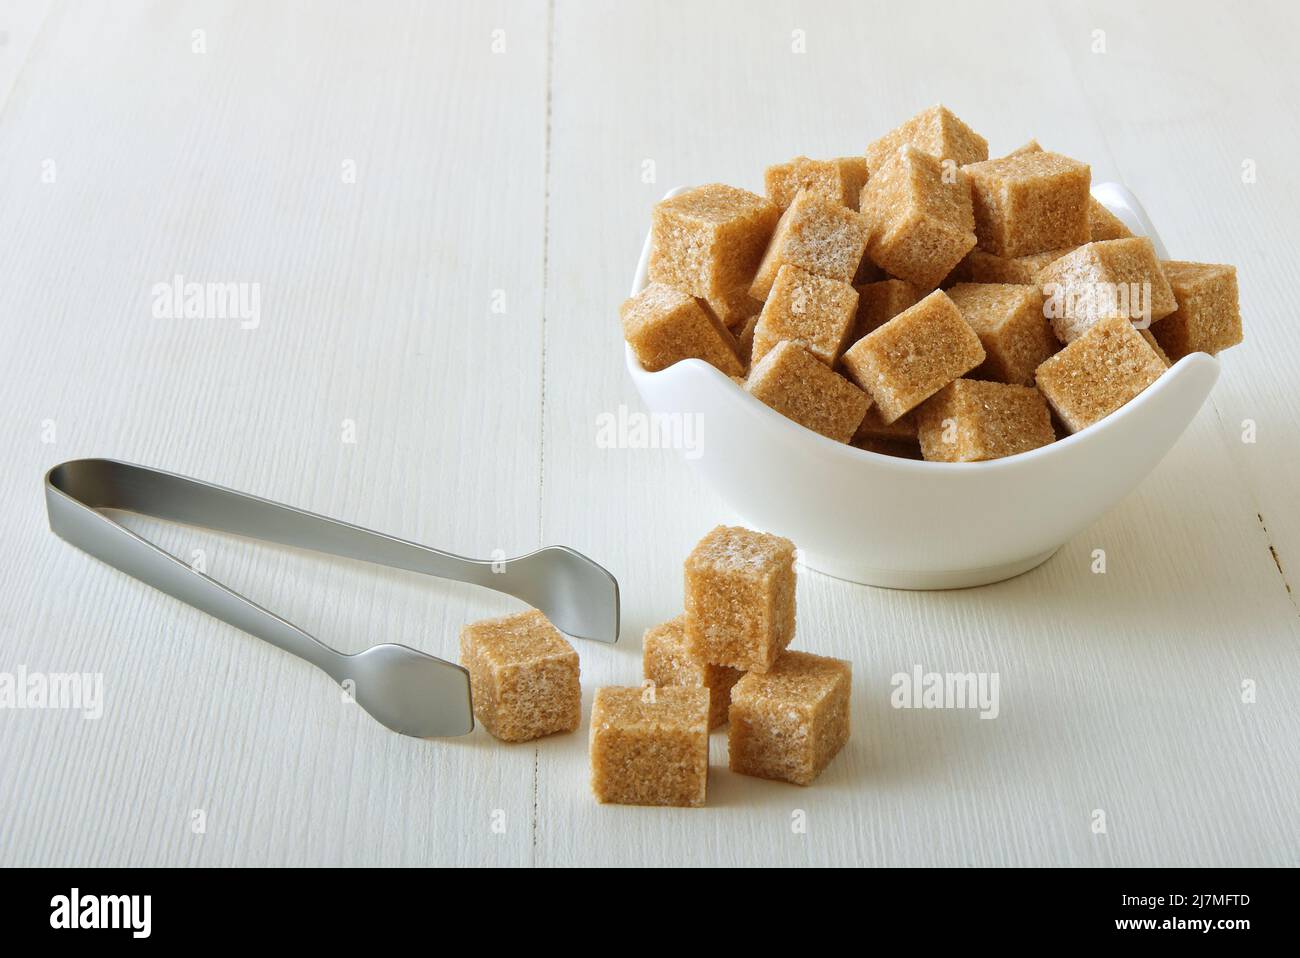 Zucchero di canna a forma di cubo in ciotola di porcellana su un tavolo di legno bianco con pinze di zucchero d'argento. Primo piano, nessuna persona. Foto Stock